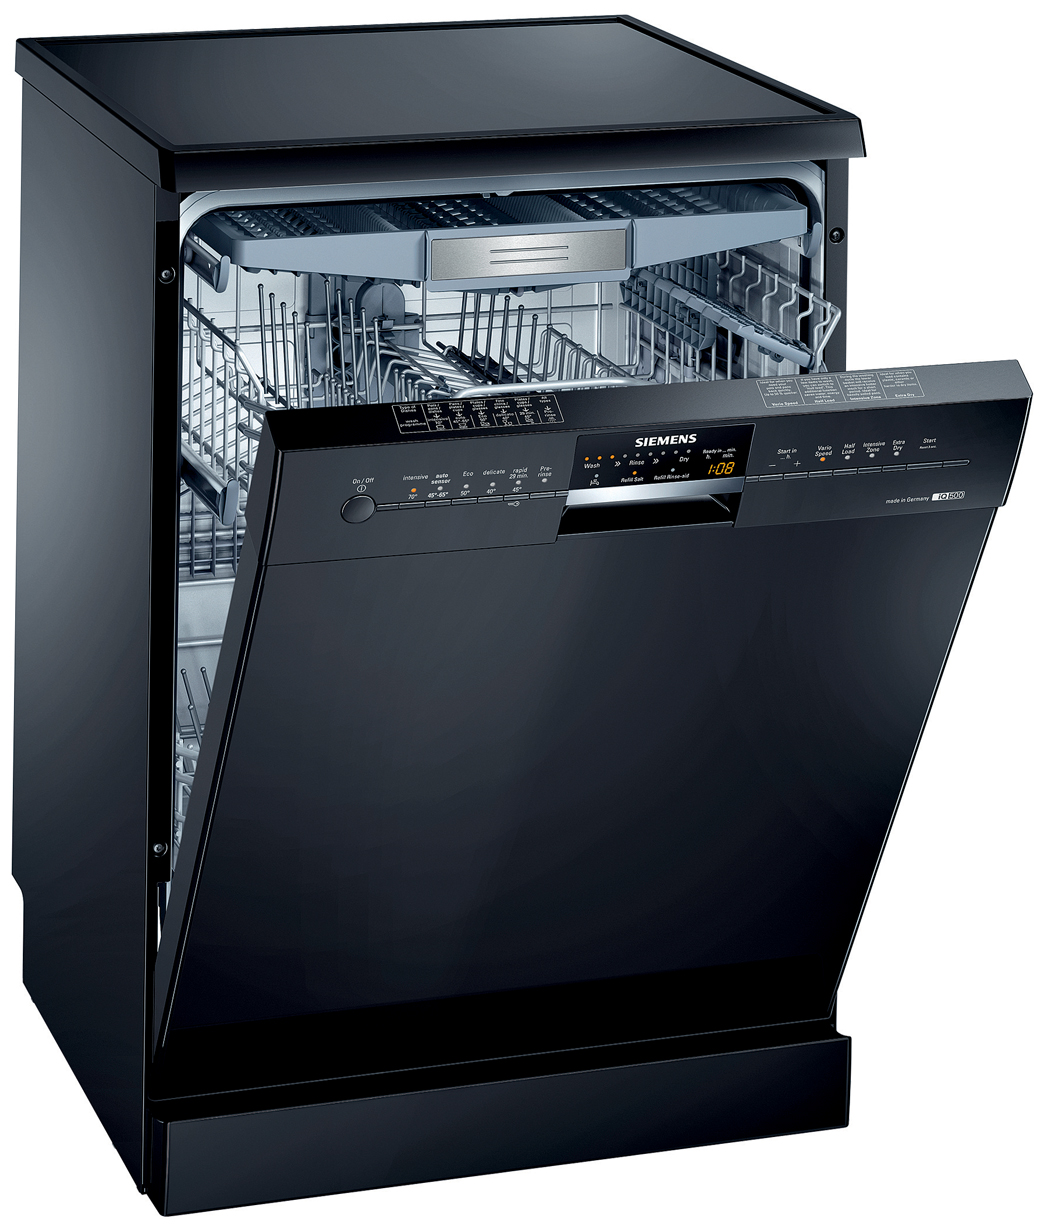 Купить посудомоечную бу. Посудомоечная машина Siemens SN 25m888. Siemens 500 посудомоечная машина. Siemens посудомоечная машина sn44d201sk/34. Посудомойка Борк встраиваемая.